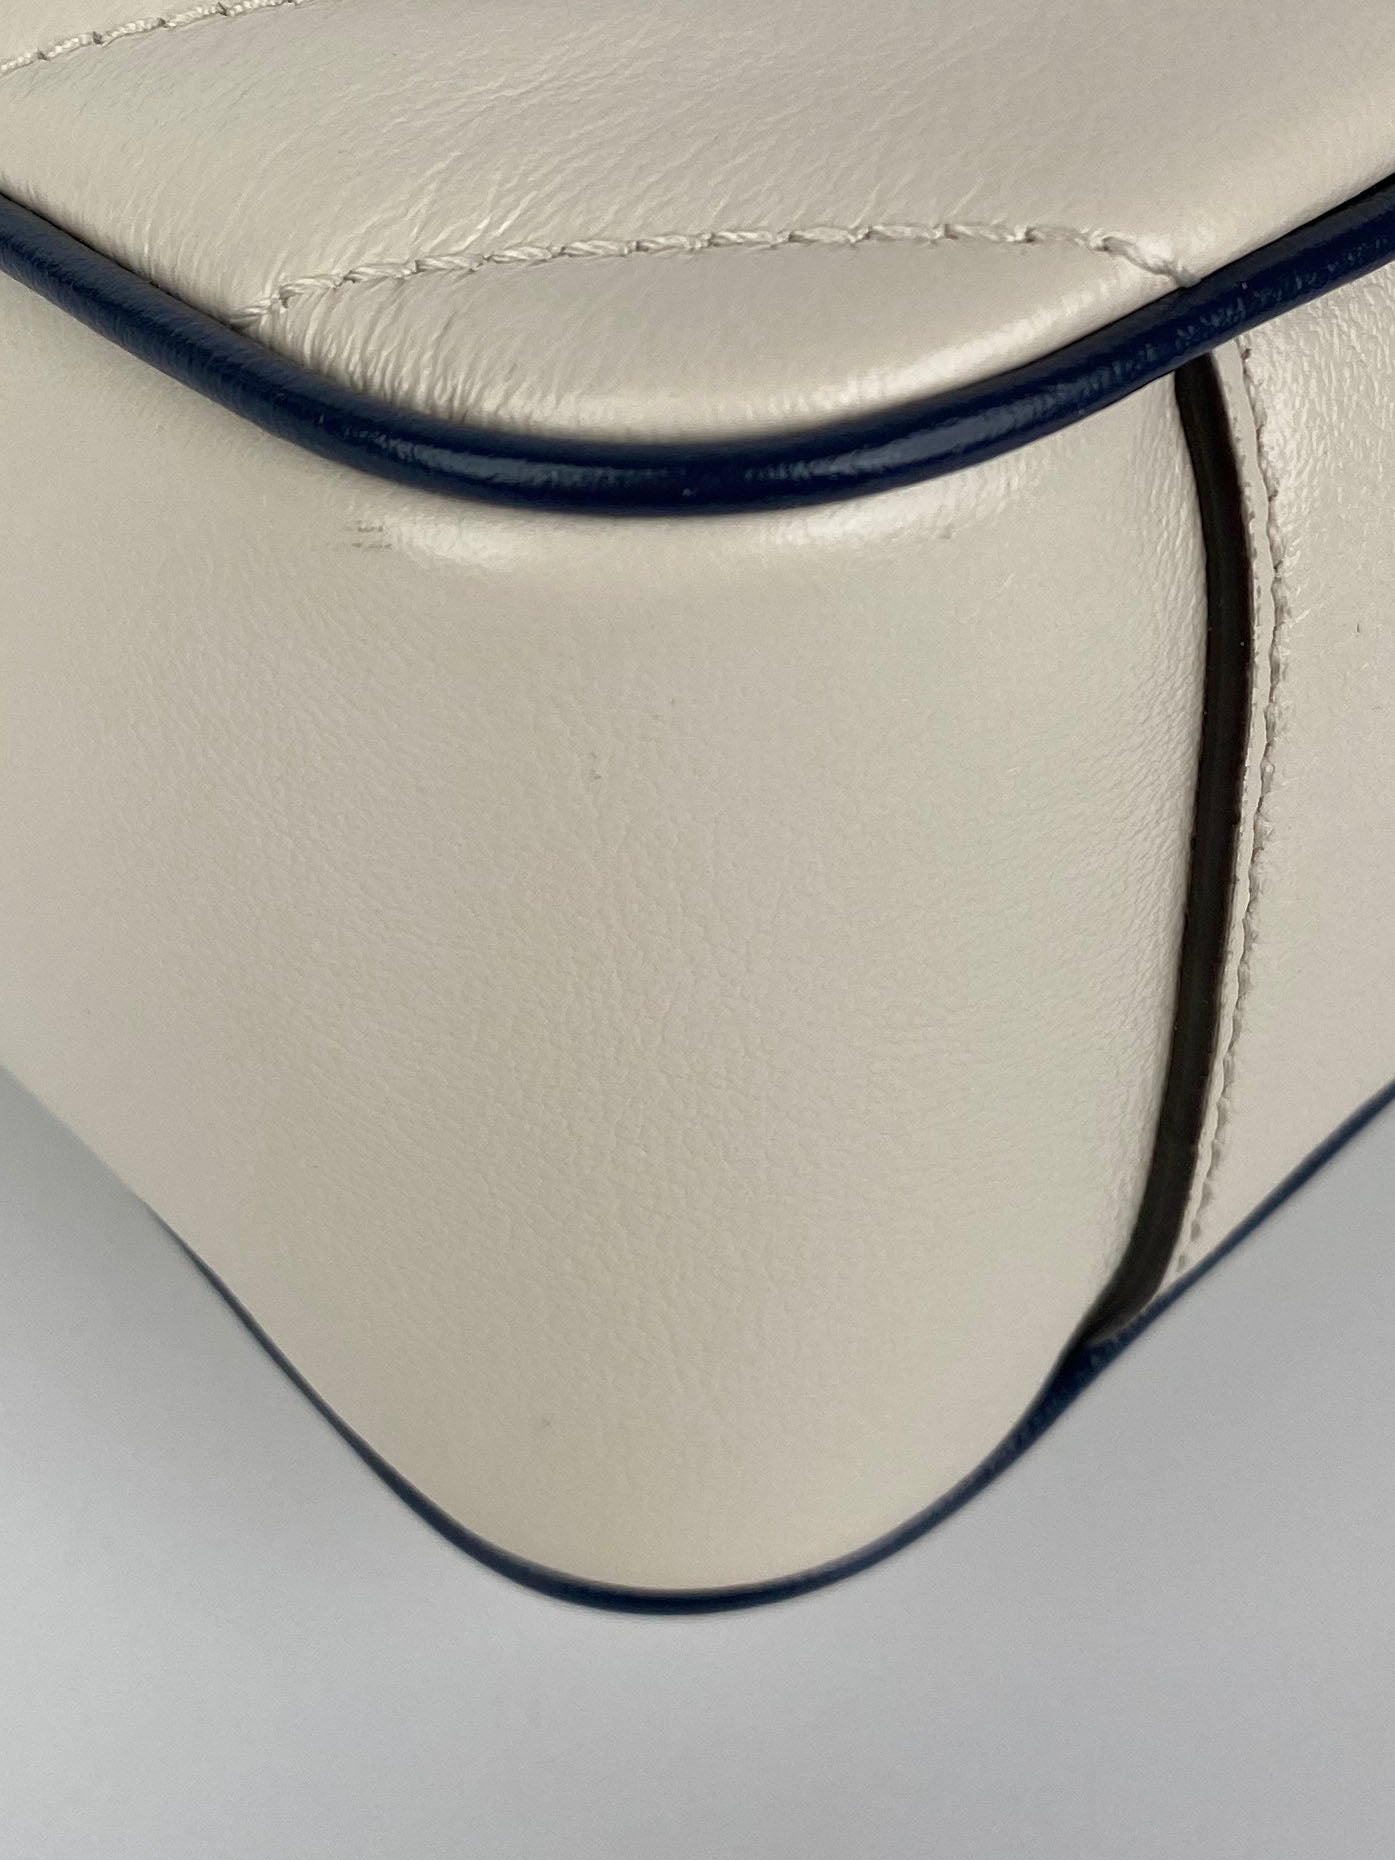 Gucci GG Marmont Torchon White & Blue Shoulder Bag